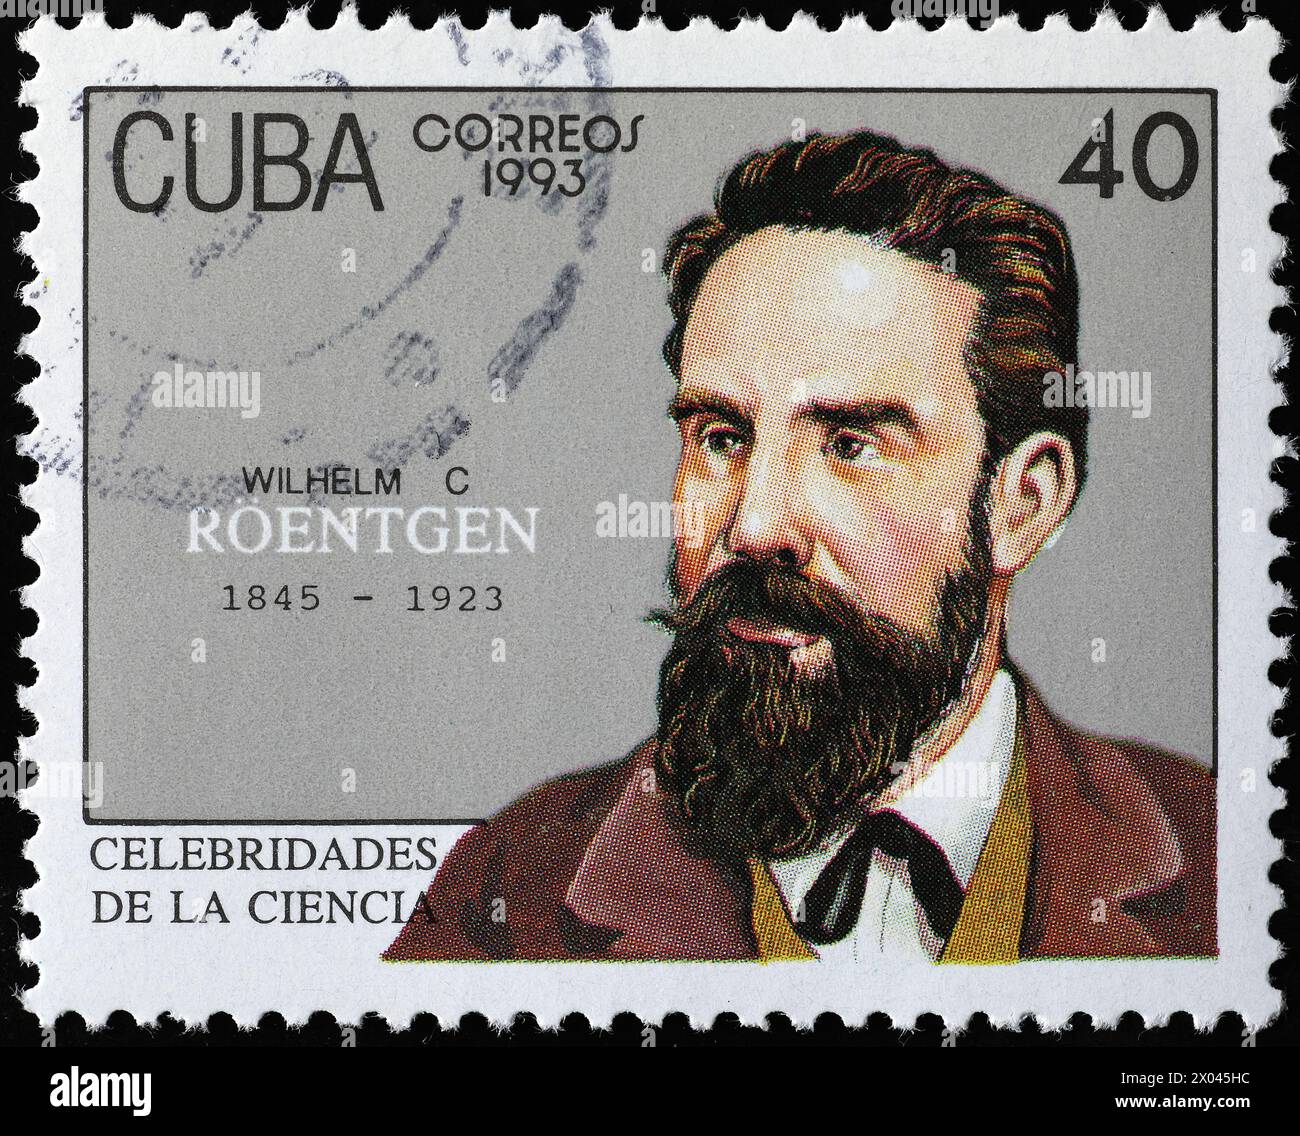 Wilhelm röntgen über die Briefmarke Kubas Stockfoto